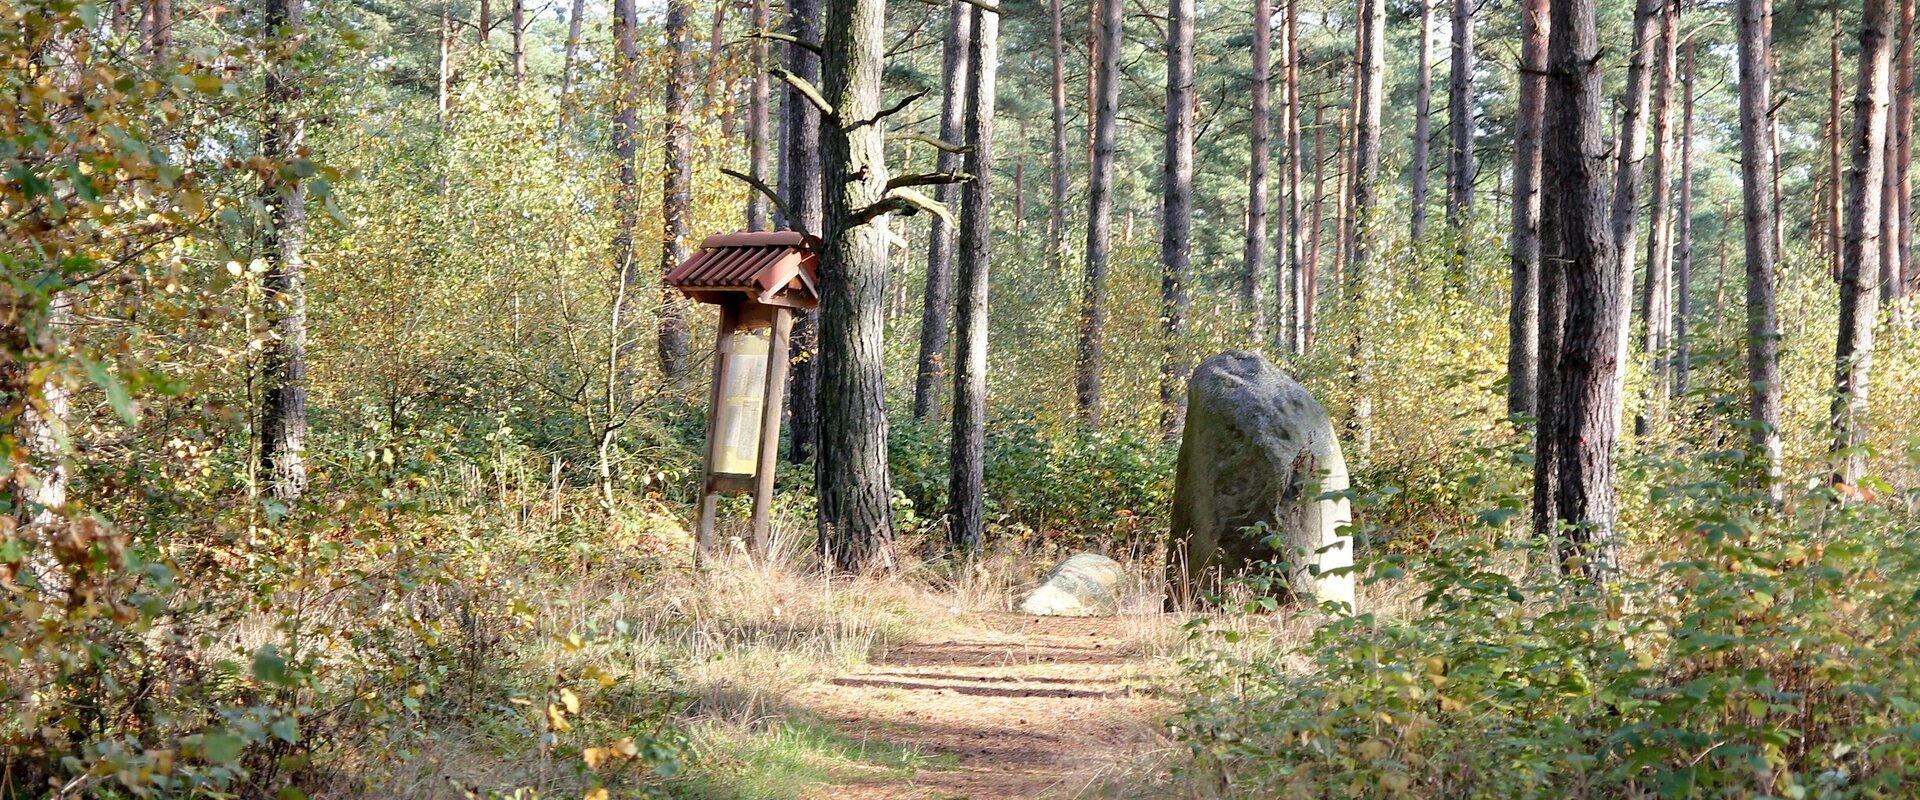 Blick auf die im Wald gelegenen "Brautsteine" bei Schmölau - zwei mächtige Findlinge mit "sagenhafter" Geschichte